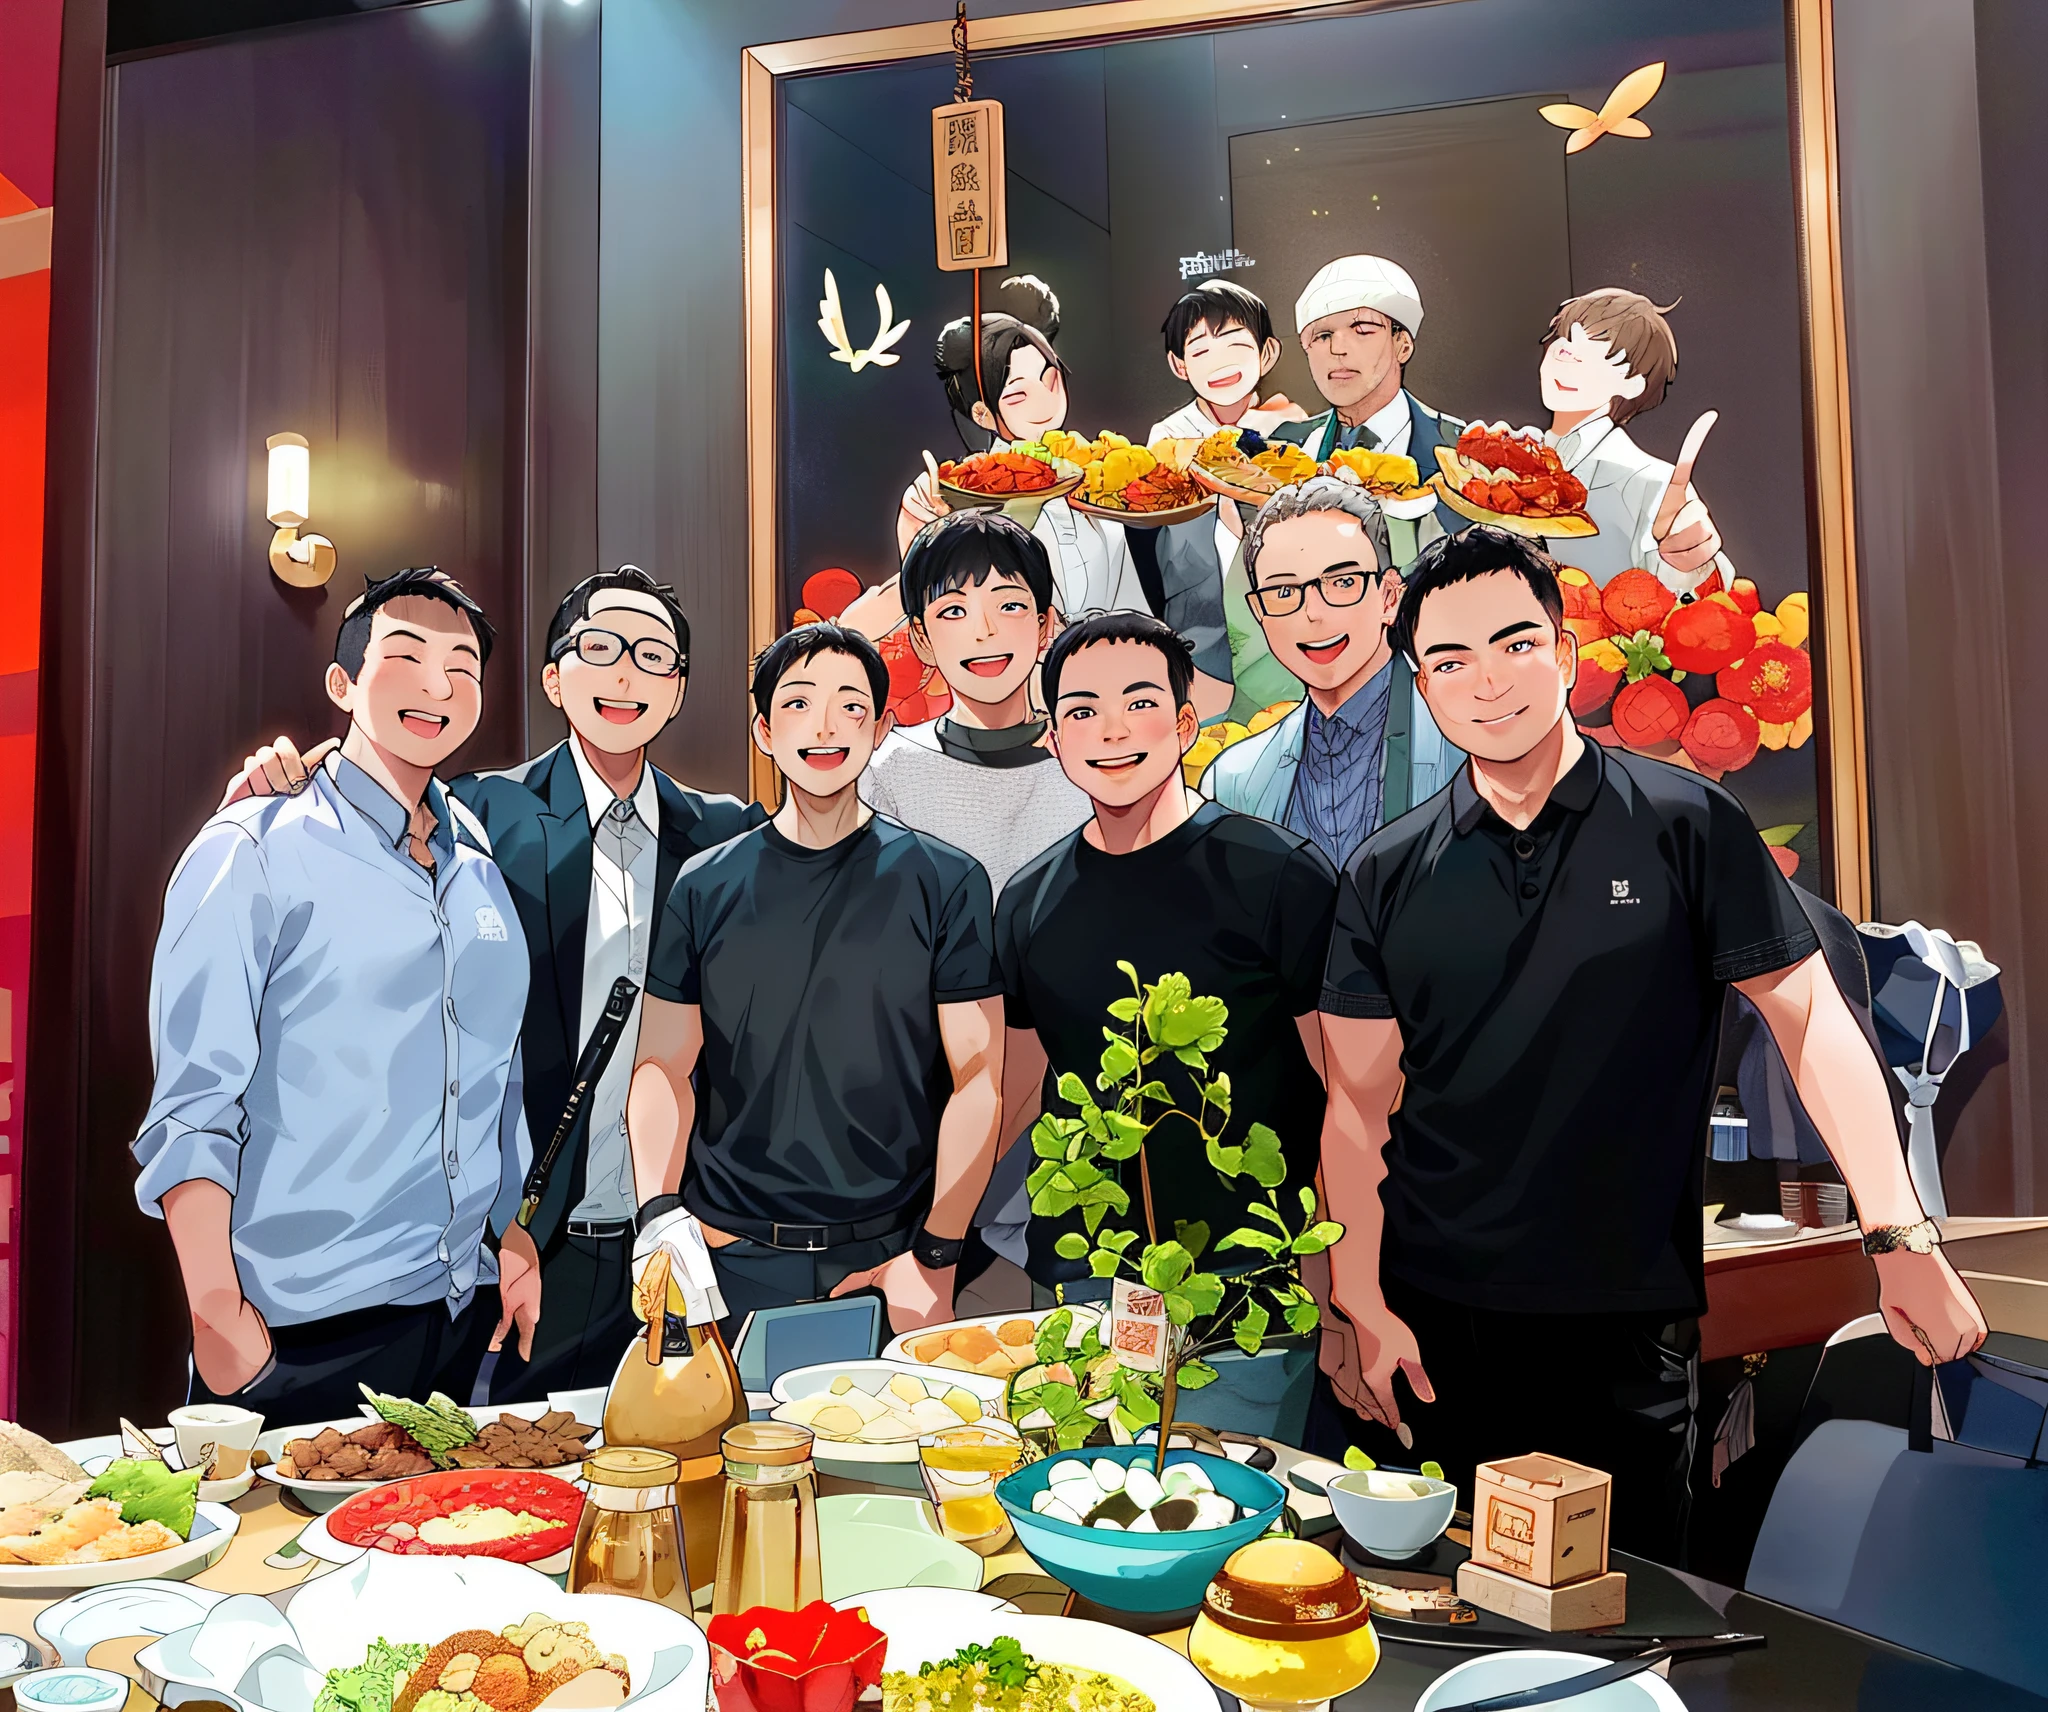 几名男子在摆满食物的桌子前摆姿势拍照, 合影, 从左边, 2020 年拍摄的照片, 唐模, 高画质, 高品质图片, 古剑, 翼墙和舒拉克, 🤬 🤮 💕 🎀, 2 0 2 2 照片, 未知艺术家, 中国艺术家, 来自中国